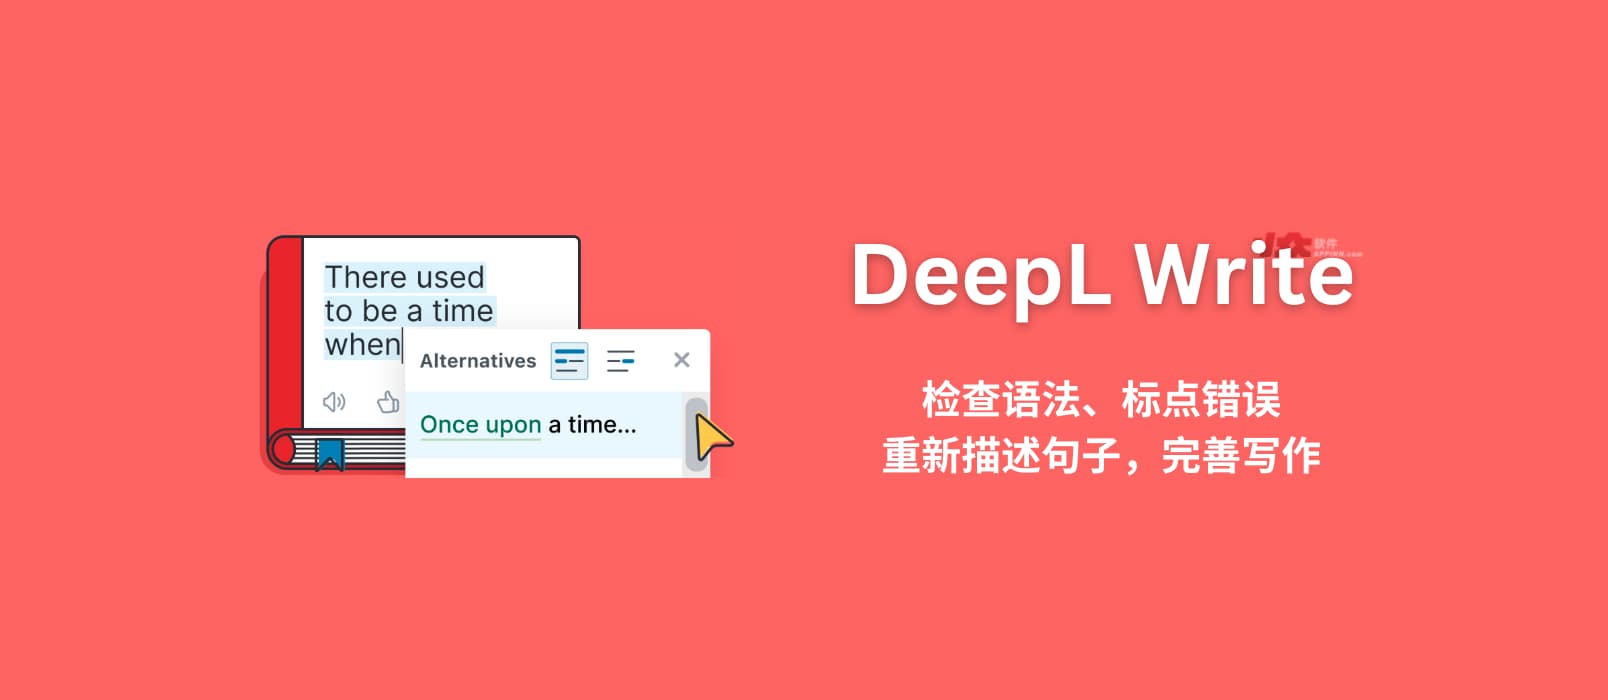 DeepL Write 发布，检查语法、标点错误，重新描述句子，完善写作。